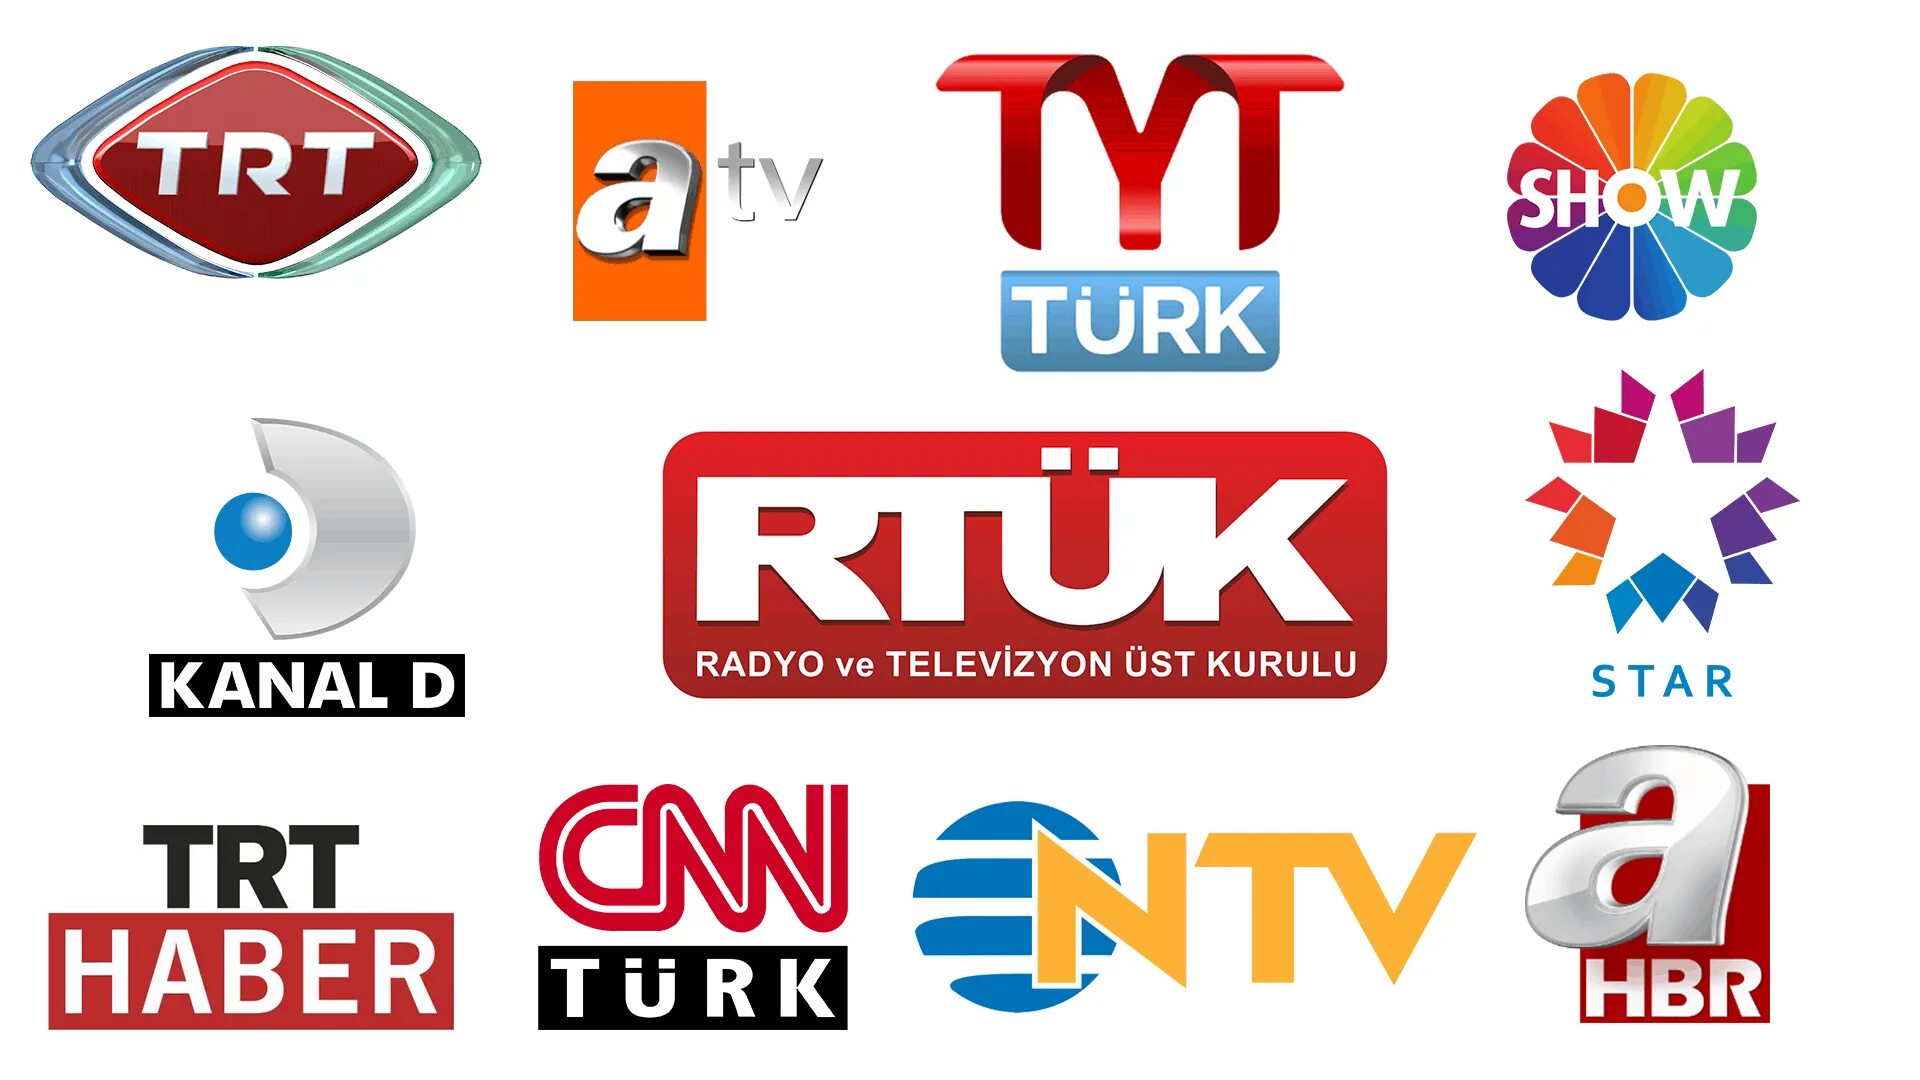 Atv что это такое в телевизоре. Atv (Турция). Телевизоры каналлари. Kanallari.